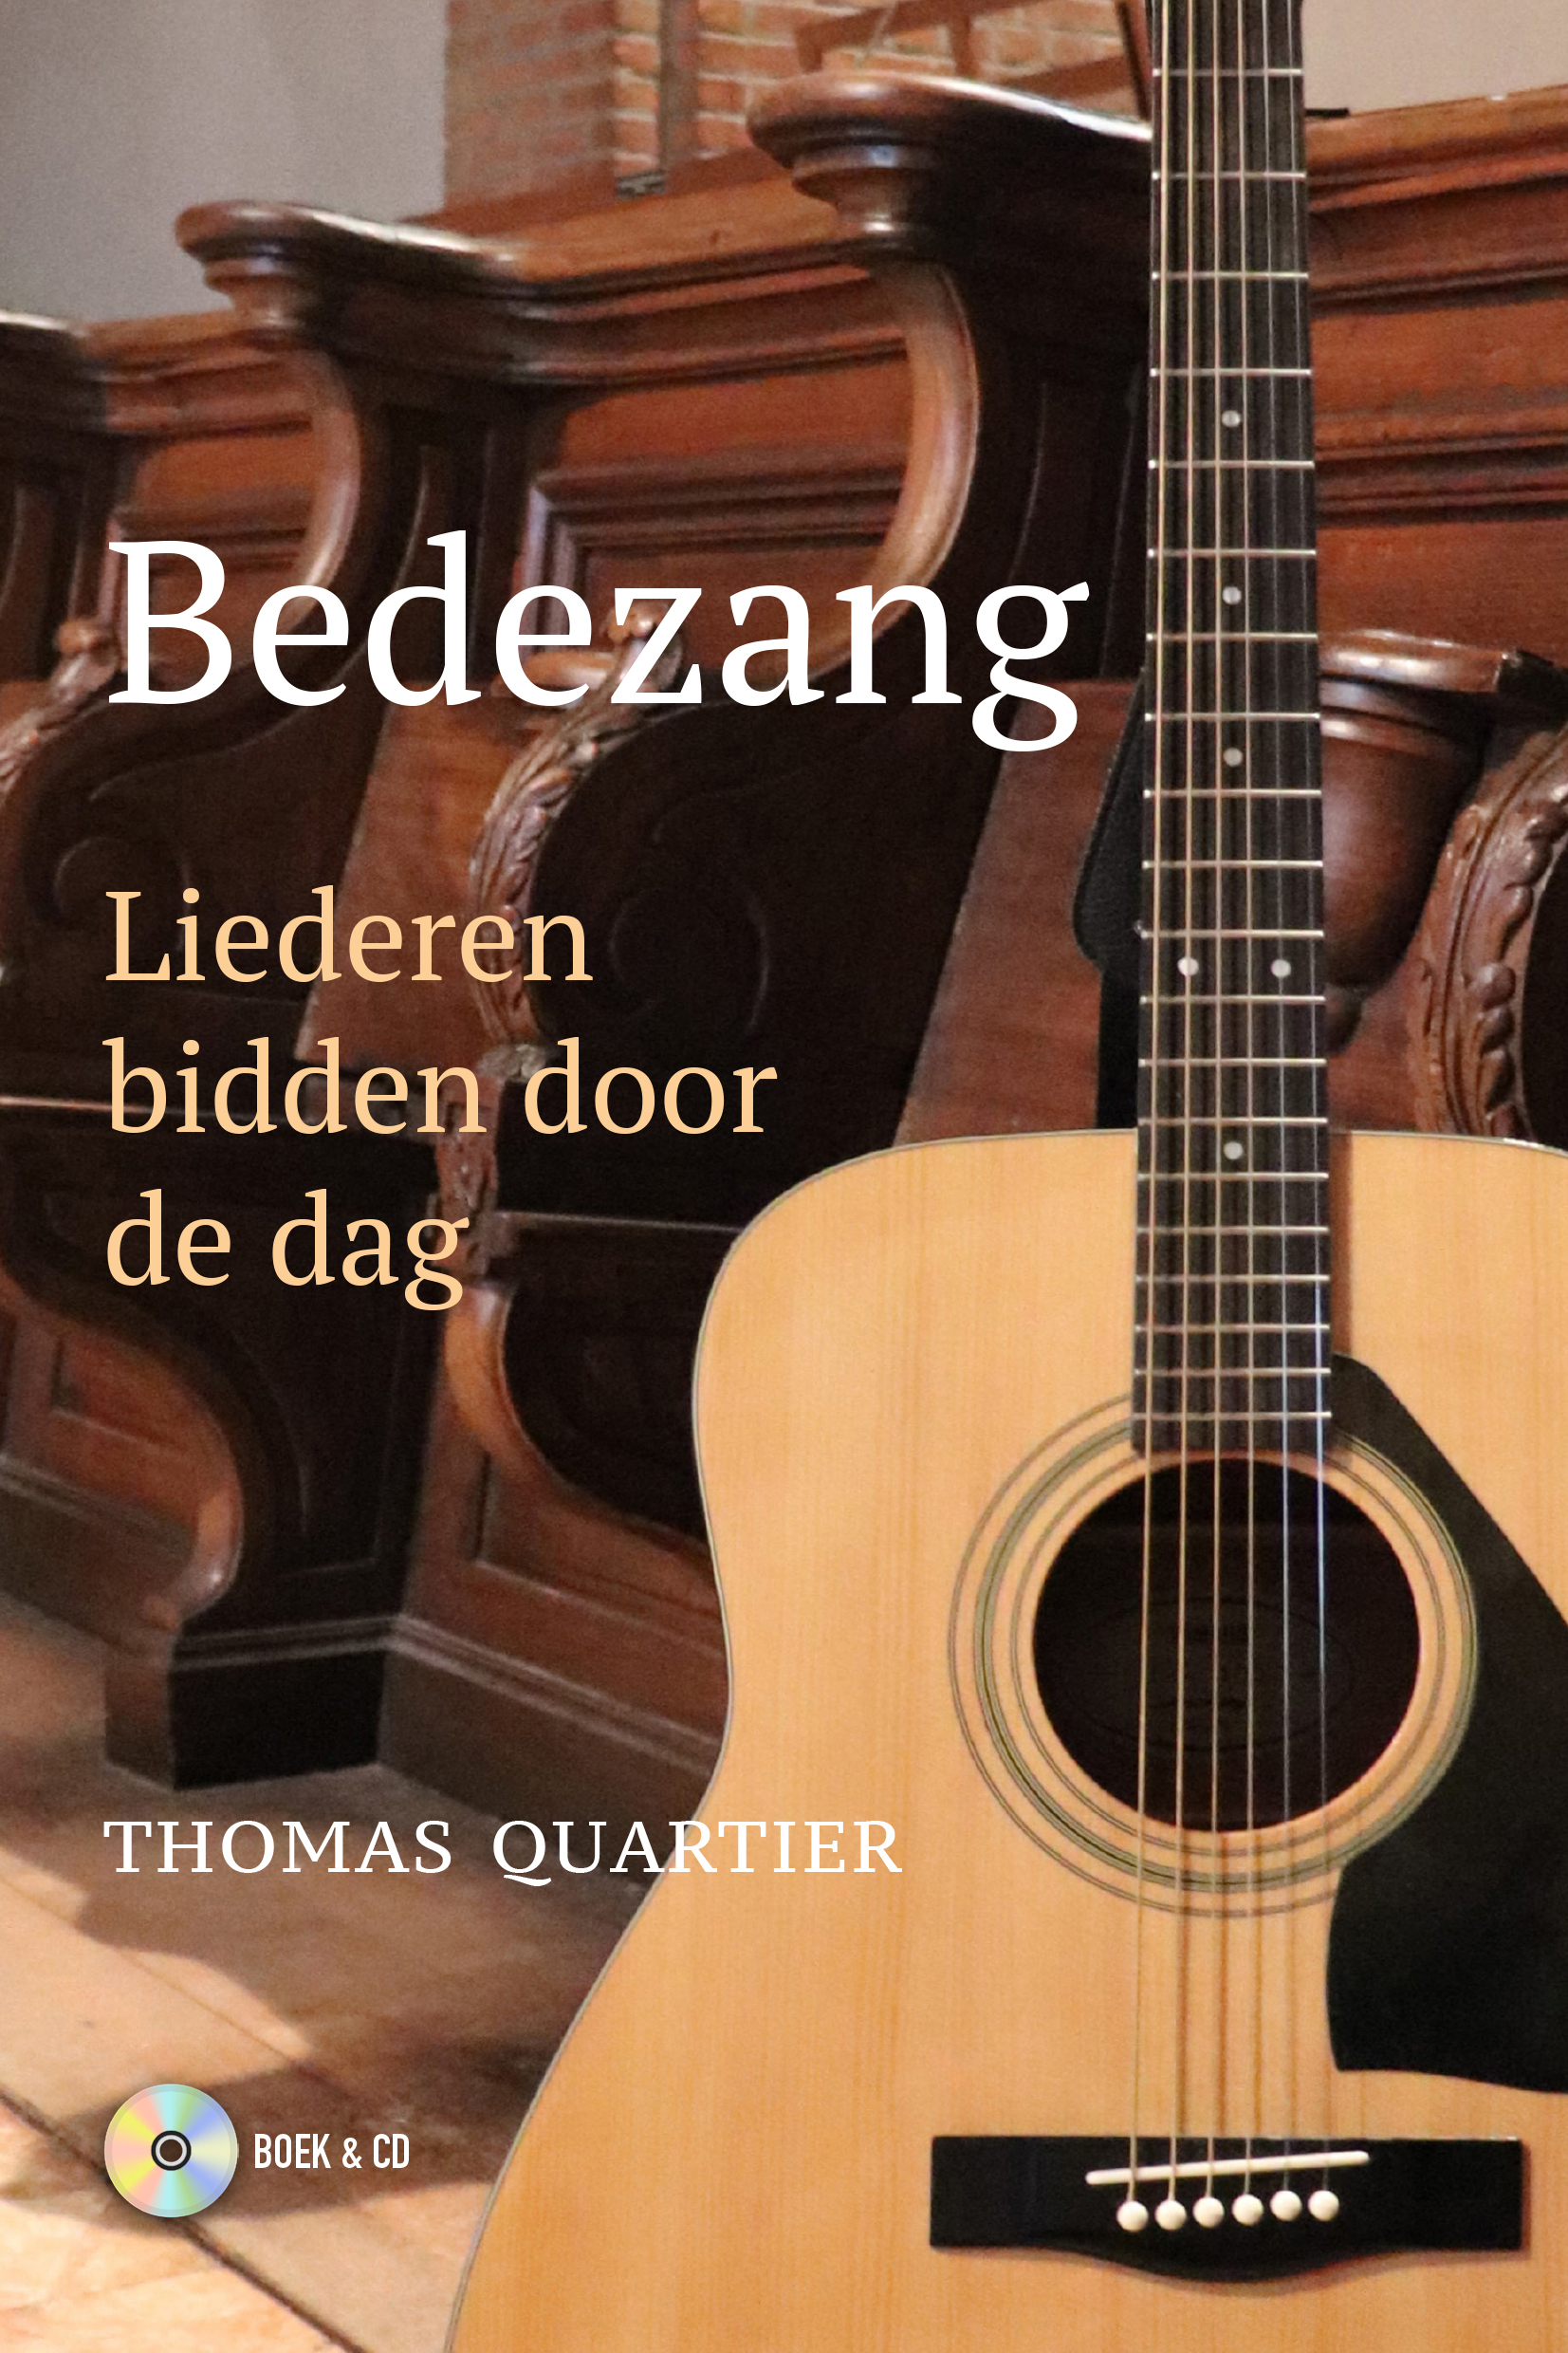 Extra - Thomas Quartier20 - Bedezang